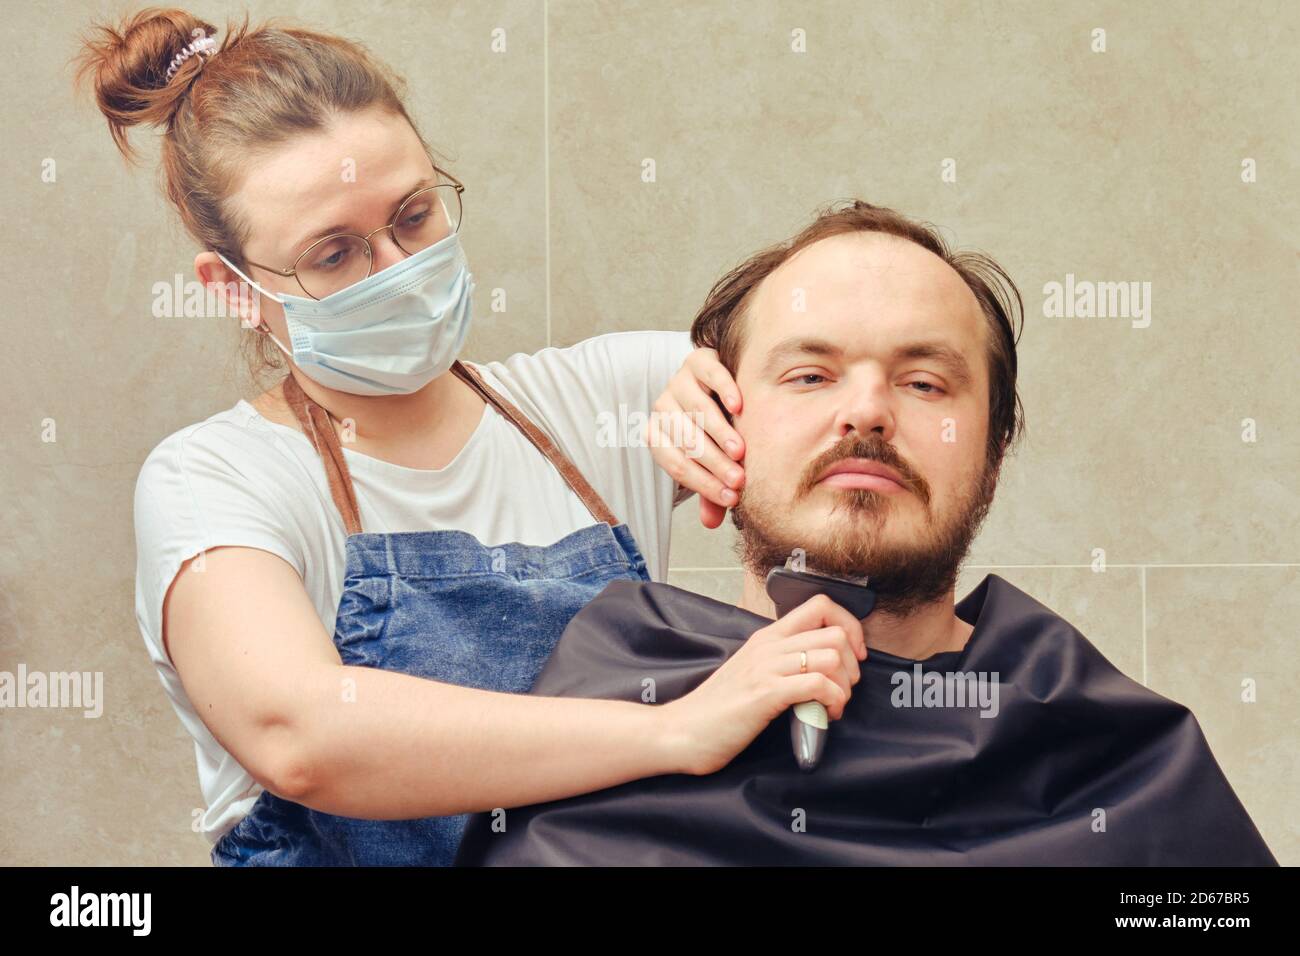 Le coiffeur dans un masque médical avec une tondeuse coupe la barbe d'un  client dans la salle de bains à la maison. Concept de coiffeurs et de  barbershops fermés dans l'isolement f